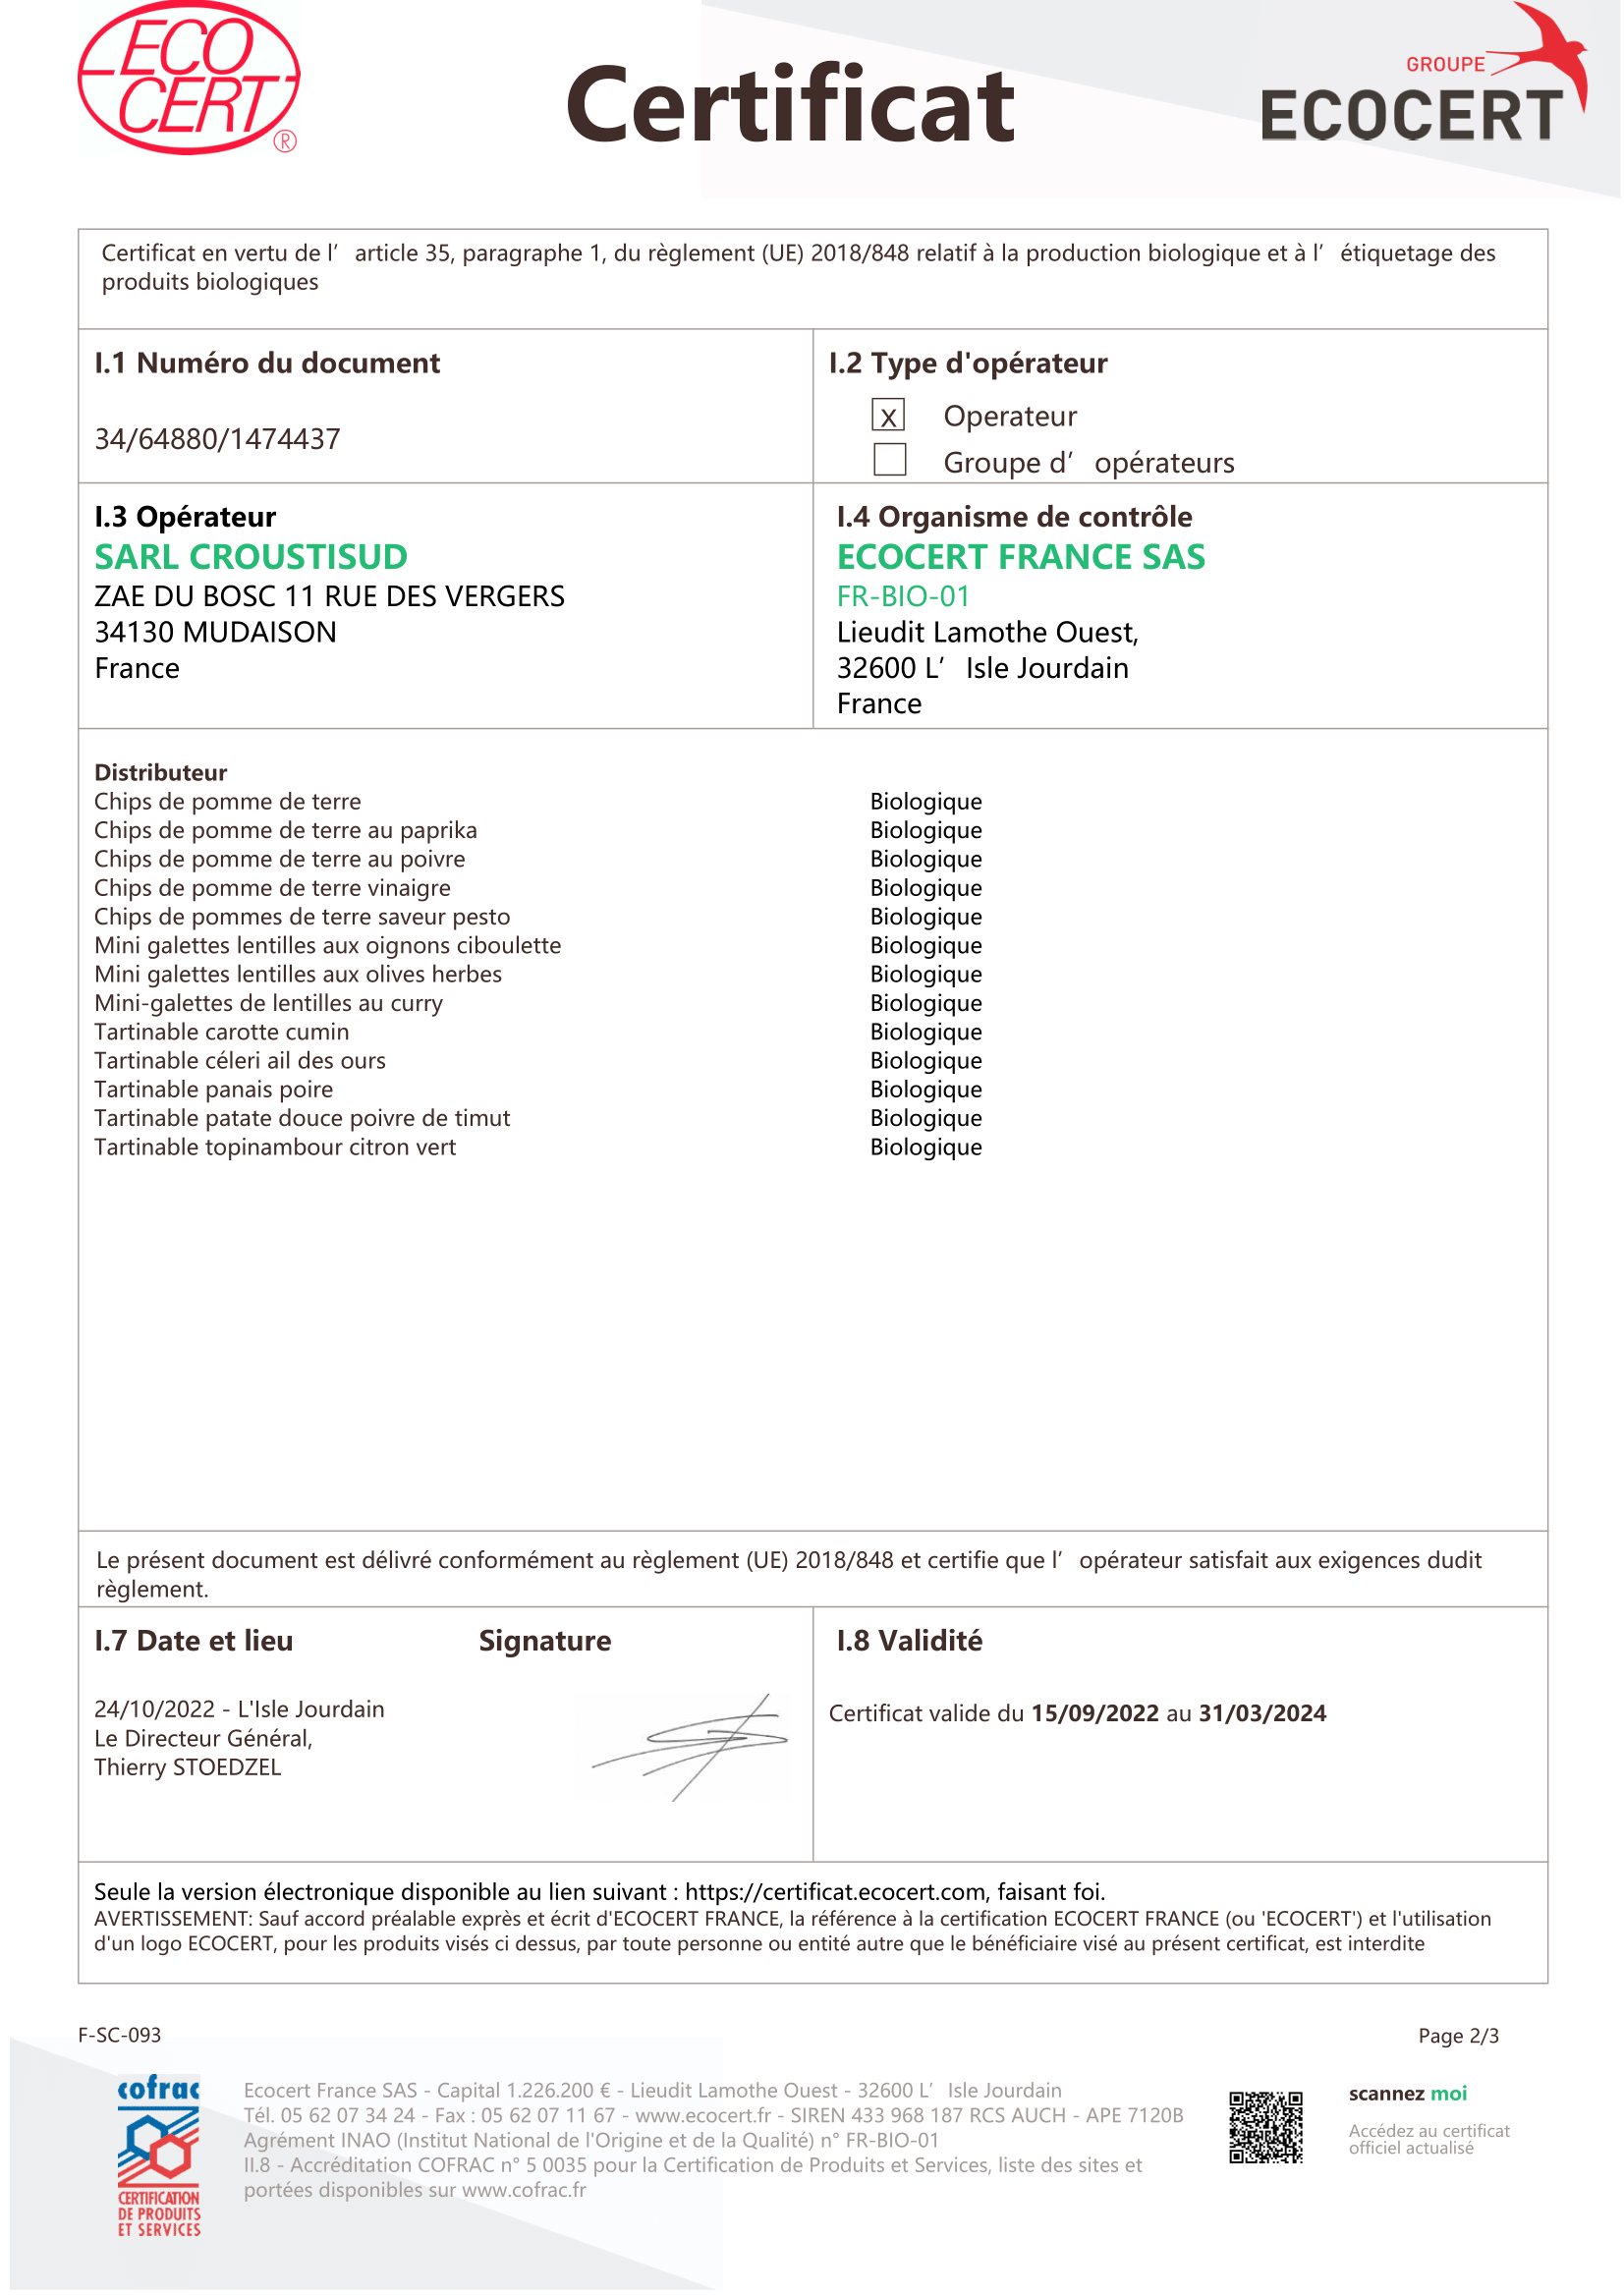 Certificat_EU_2018_848-1-2